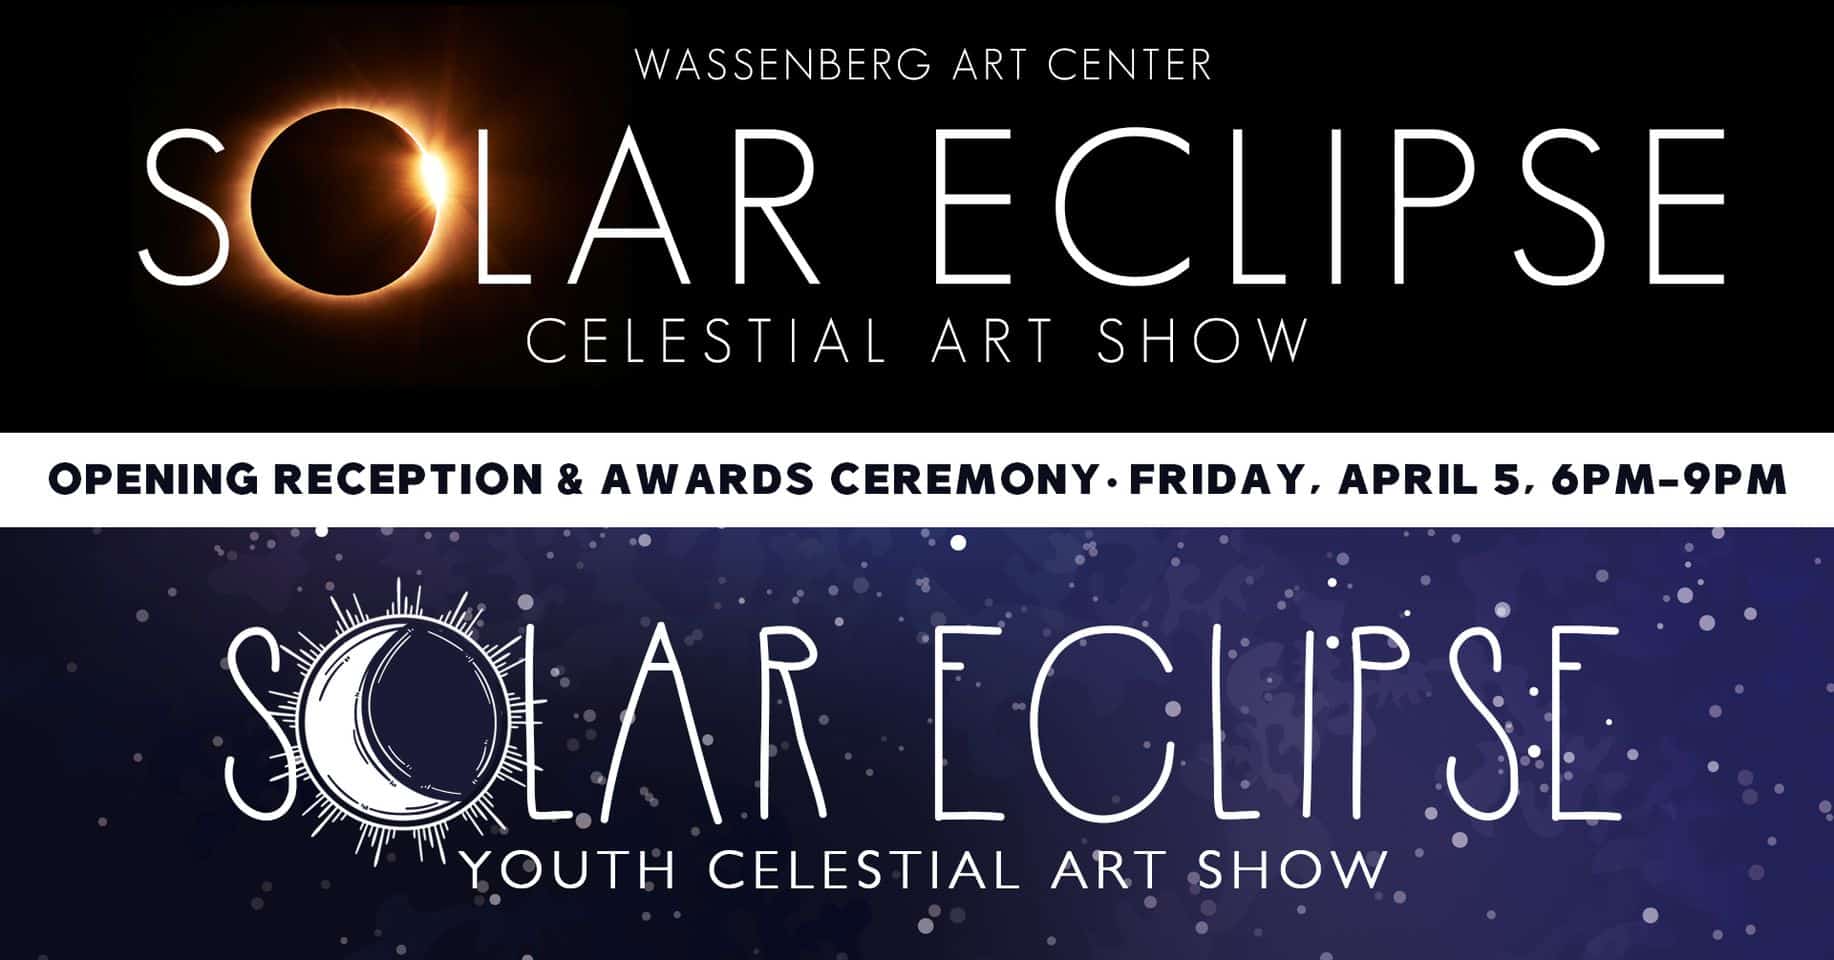 Wassenberg Art Center Solar Eclipse Celestial Art Show